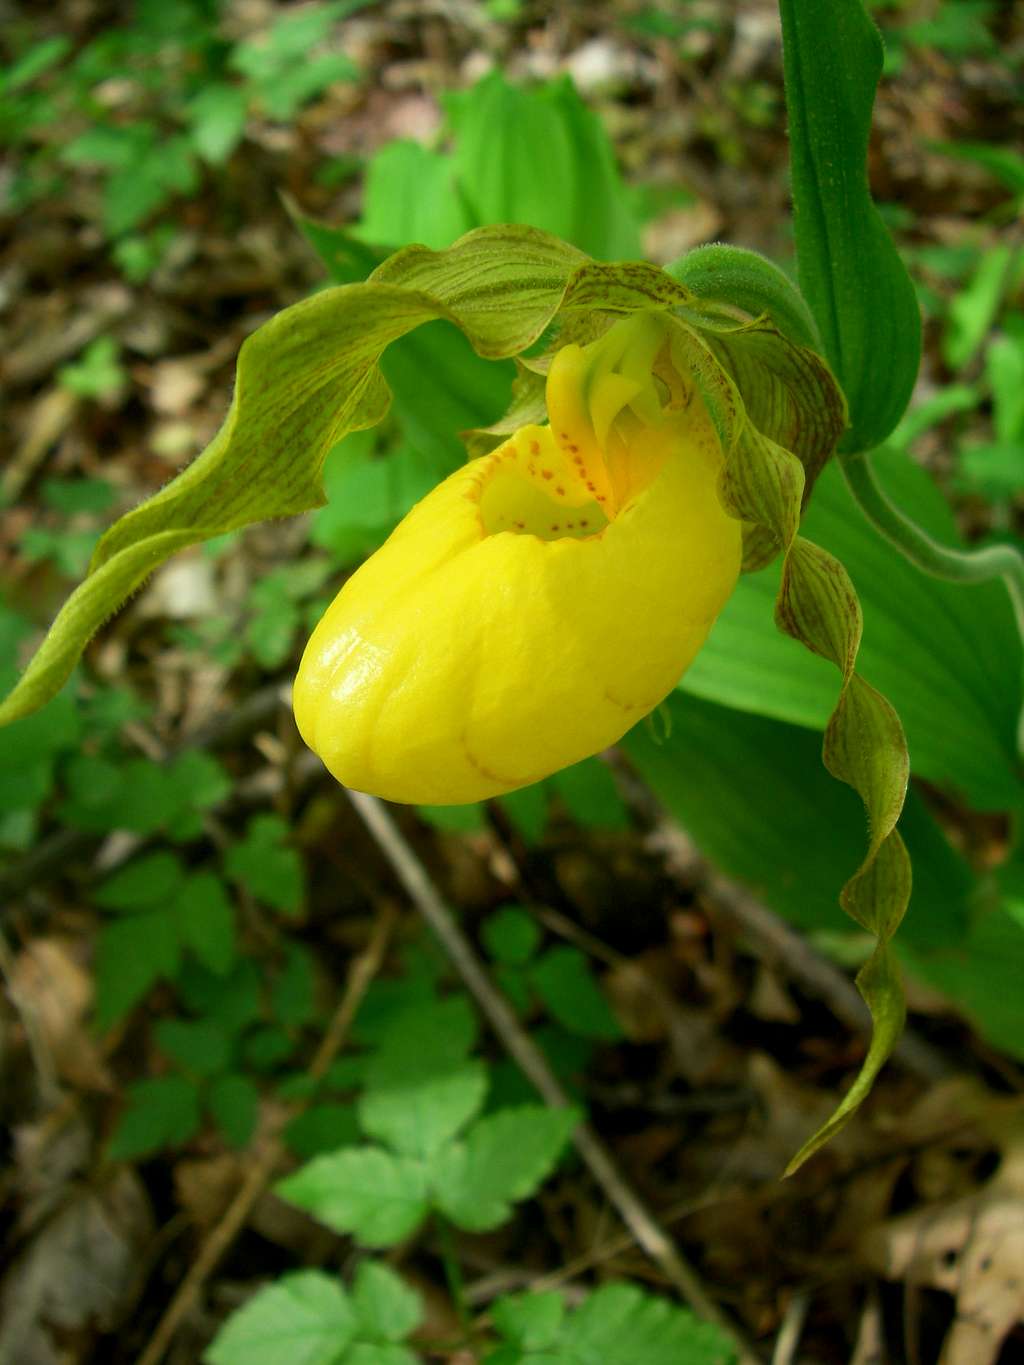 Large yellow ladyslipper